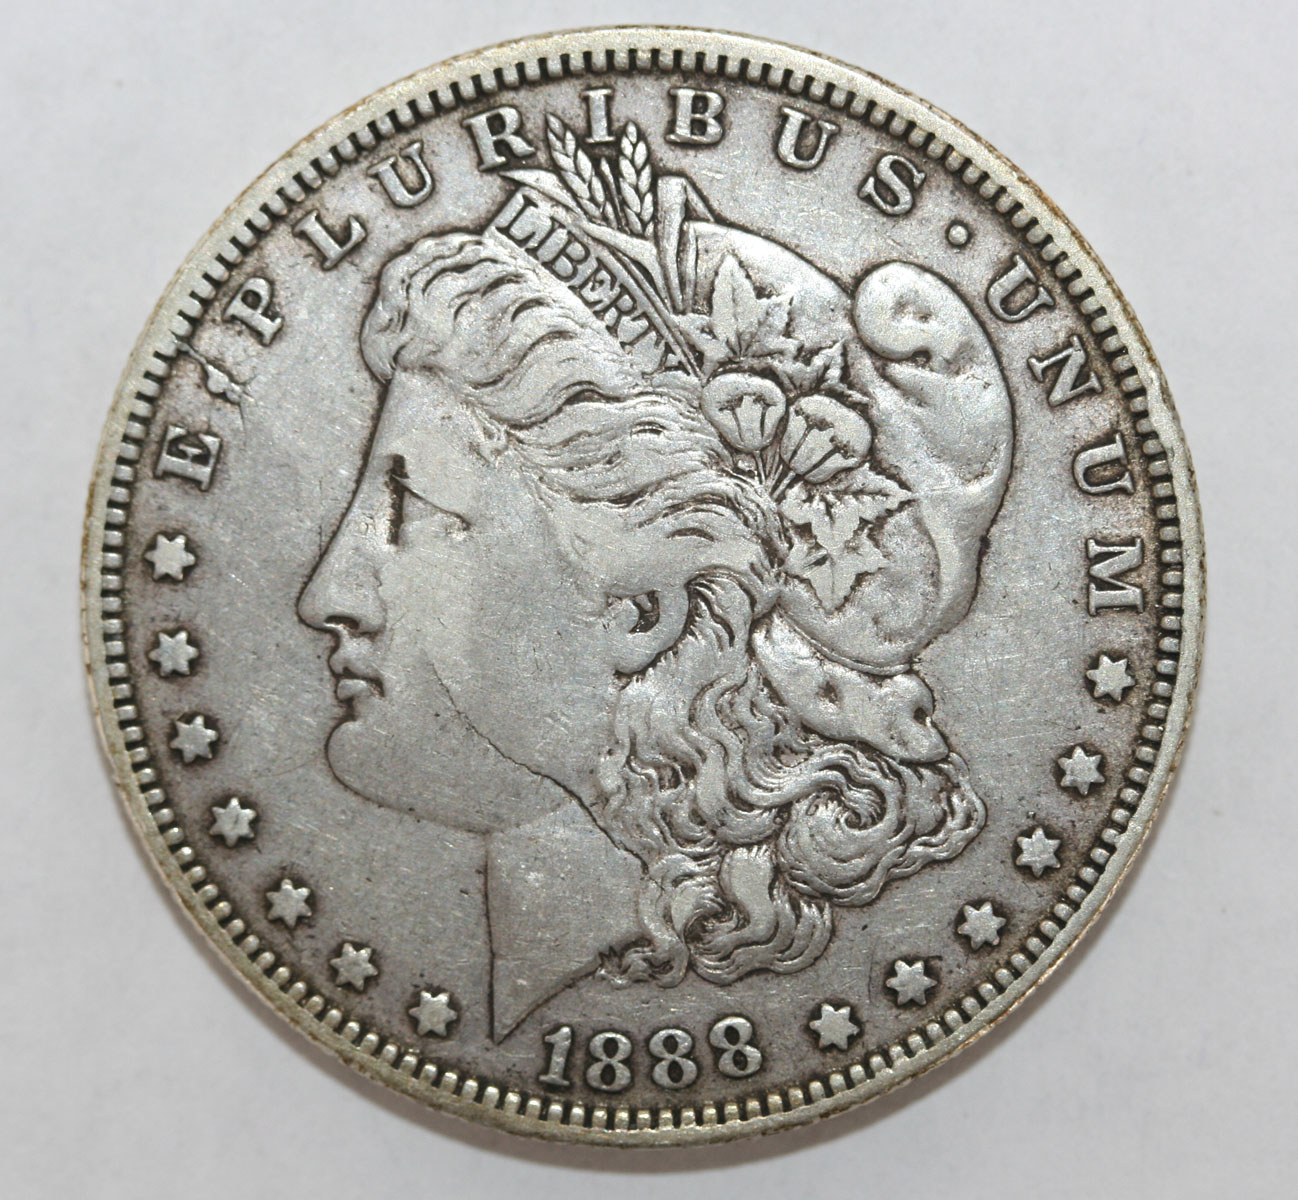 Photo of a collectible coin